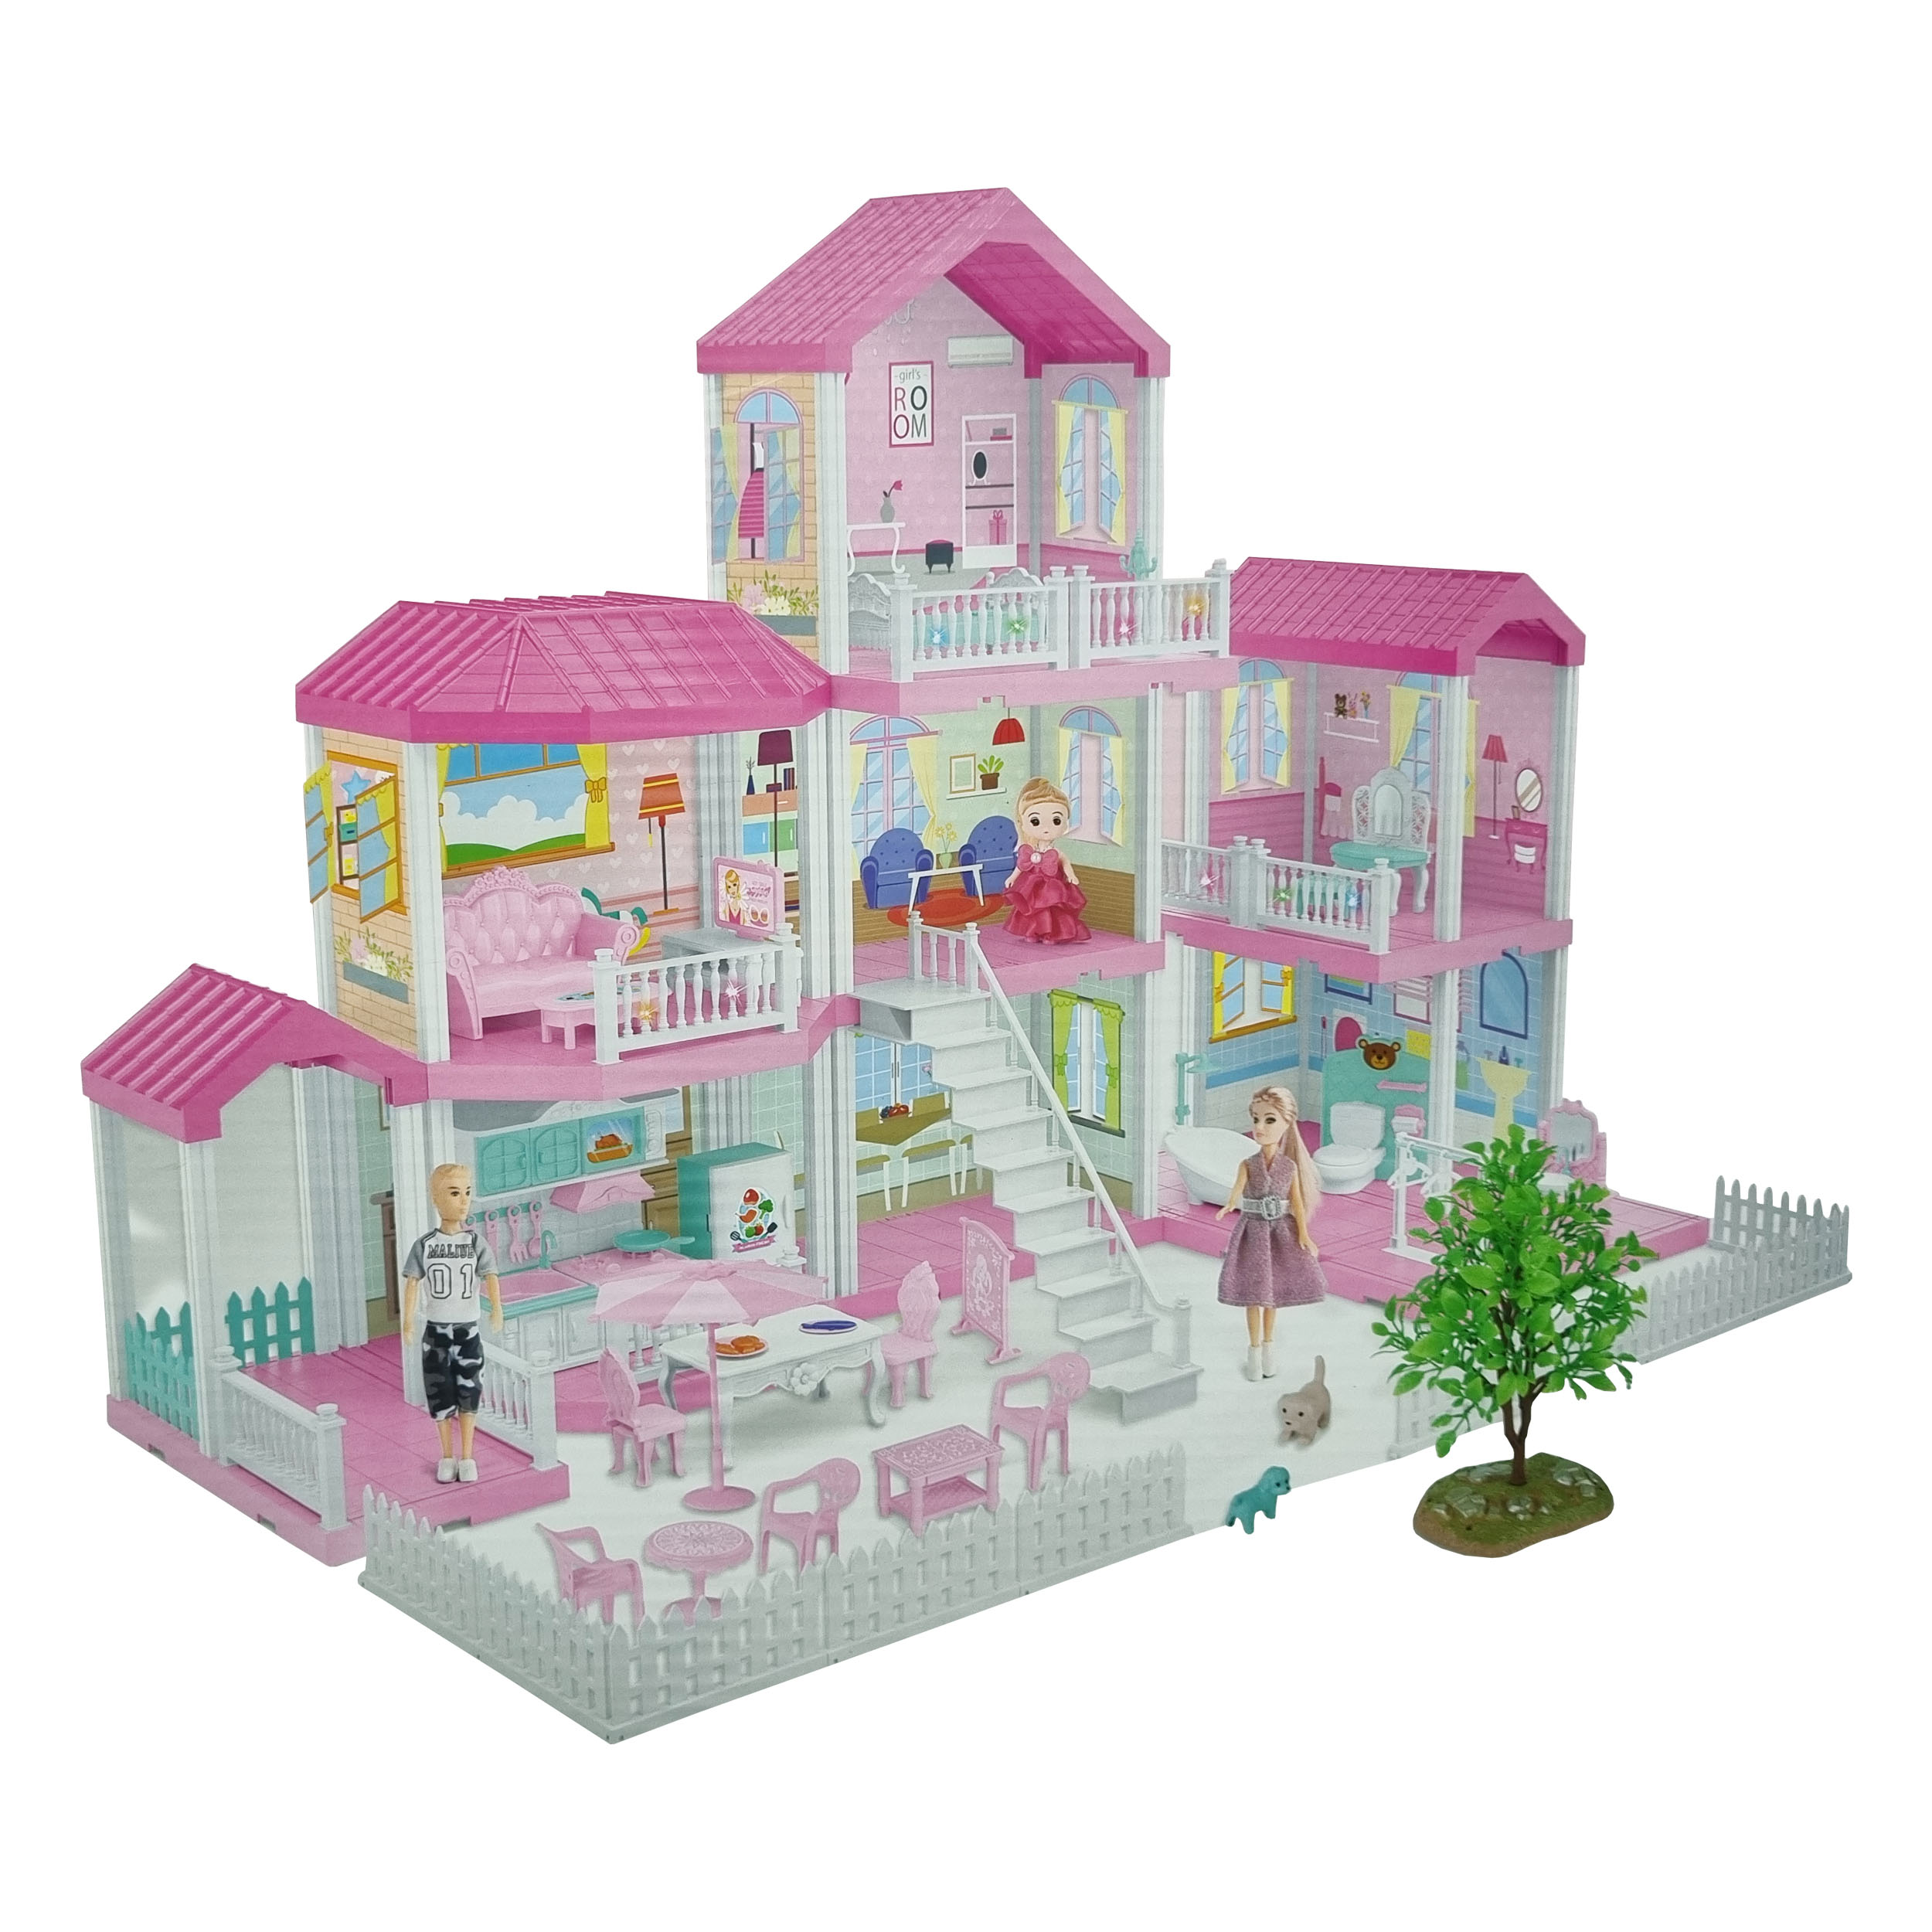 اسباب بازی طرح خانه عروسکی مدل DREAM VILLA کد 434535